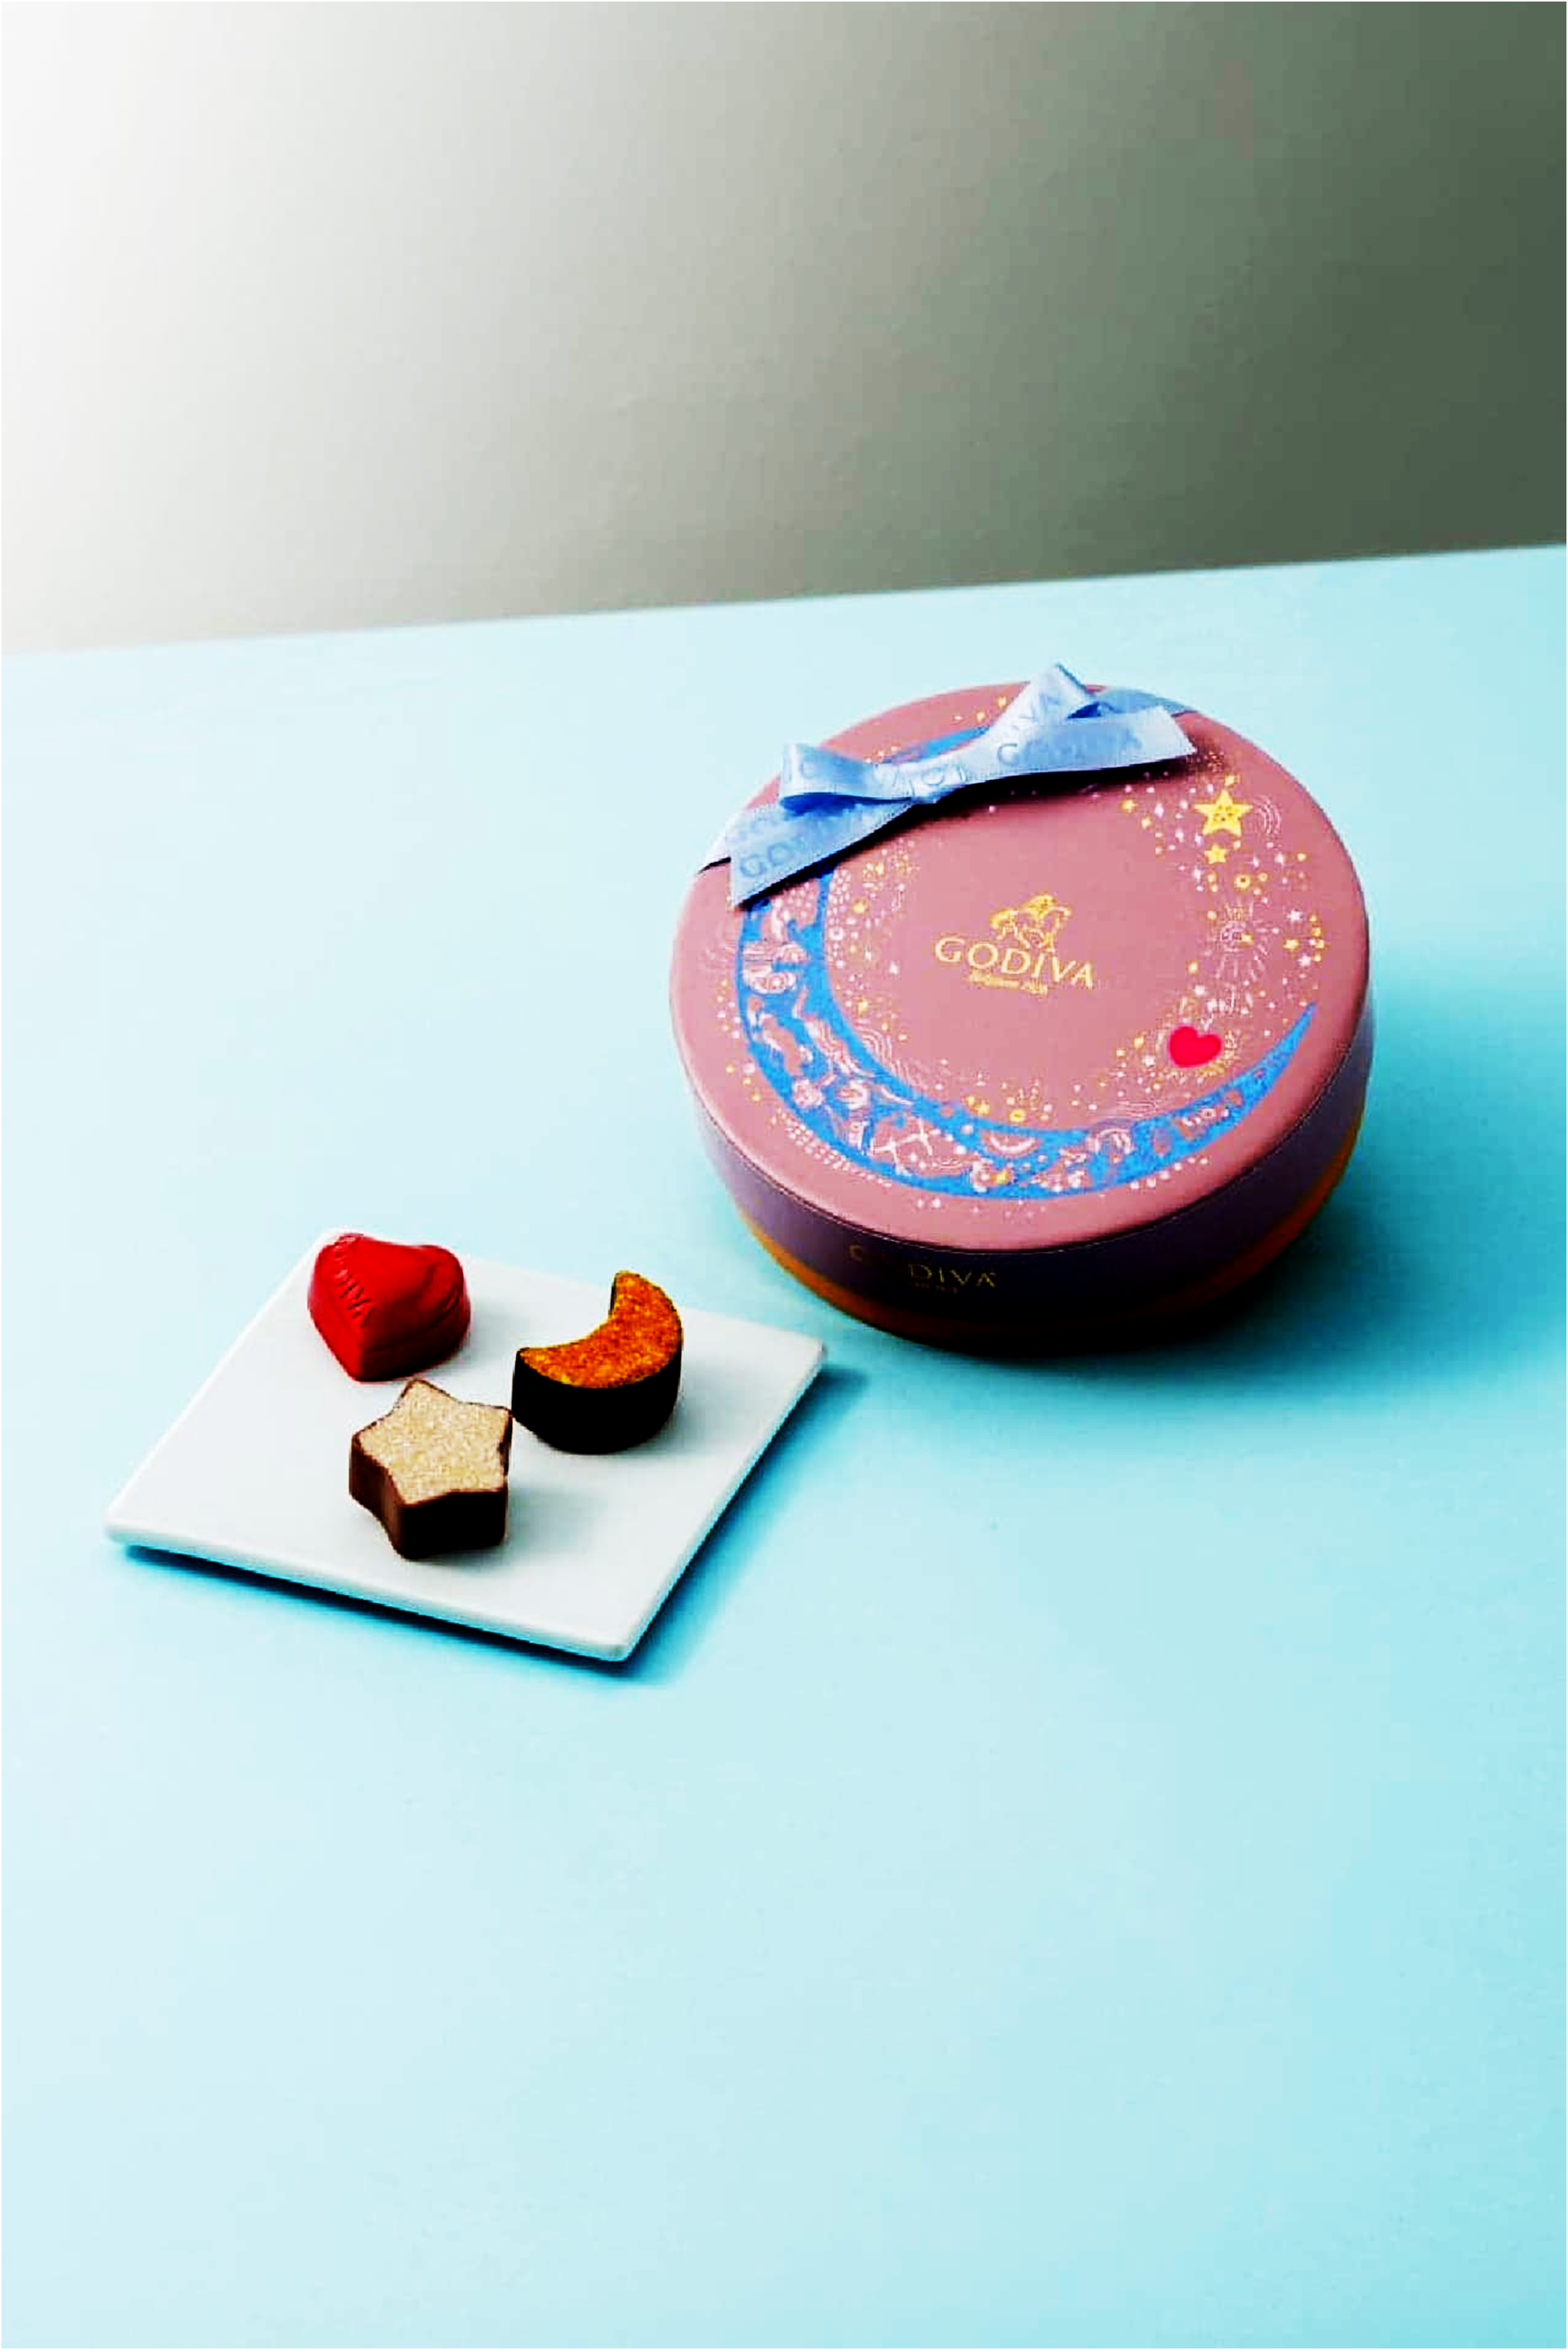 バレンタイン対策はゴディバの限定『フォーチュン
ショコラコレクション』1月10日から販売中！
